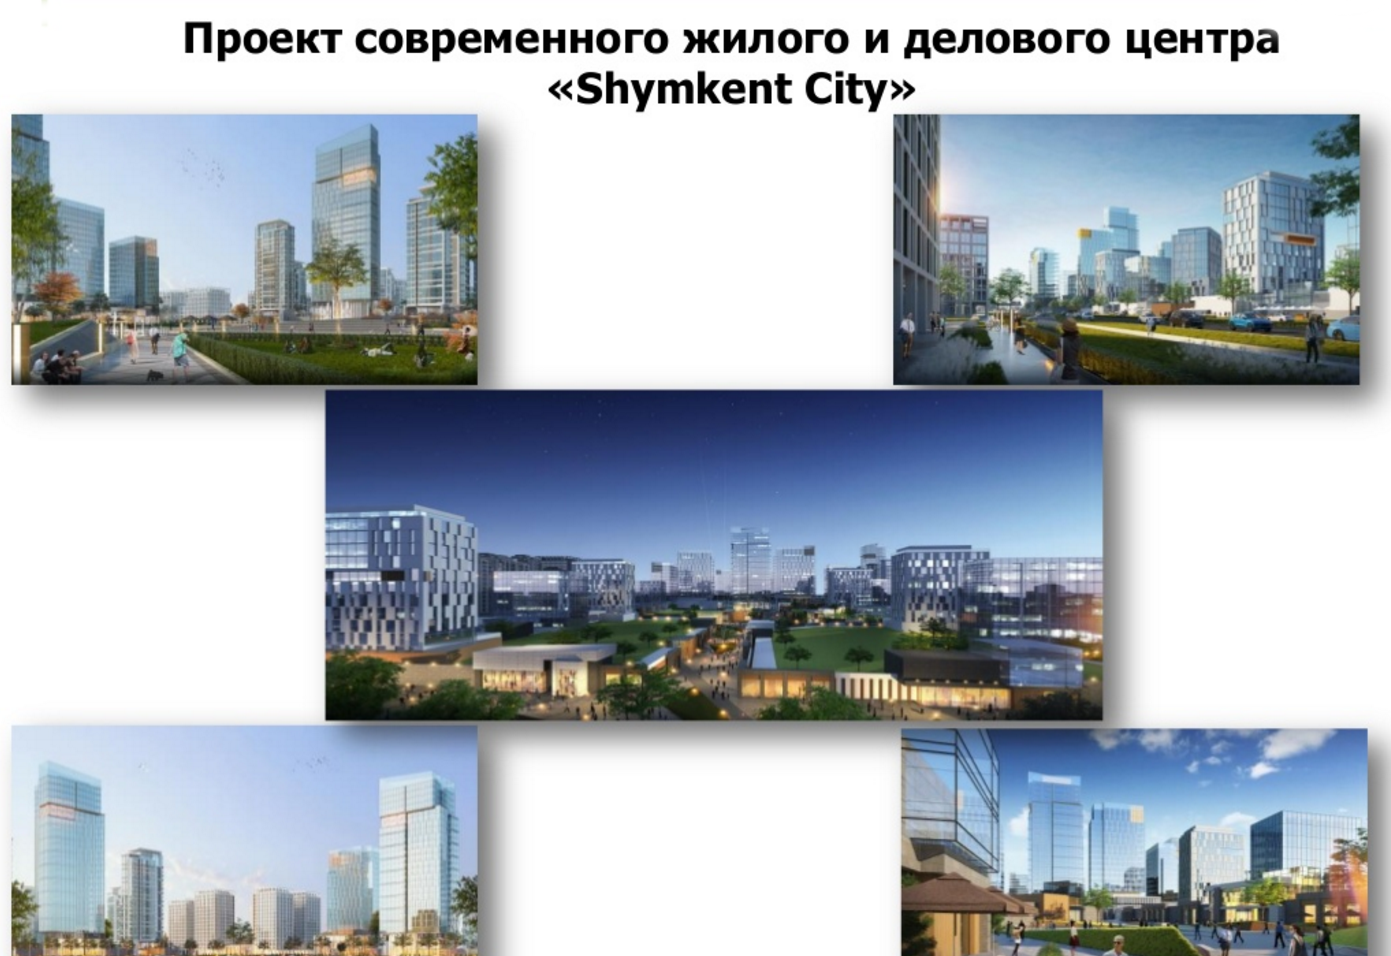 Габидулла Абдрахимов : Новый район «Shymkent-City» будет напоминать нью-йоркский район Манхэттен